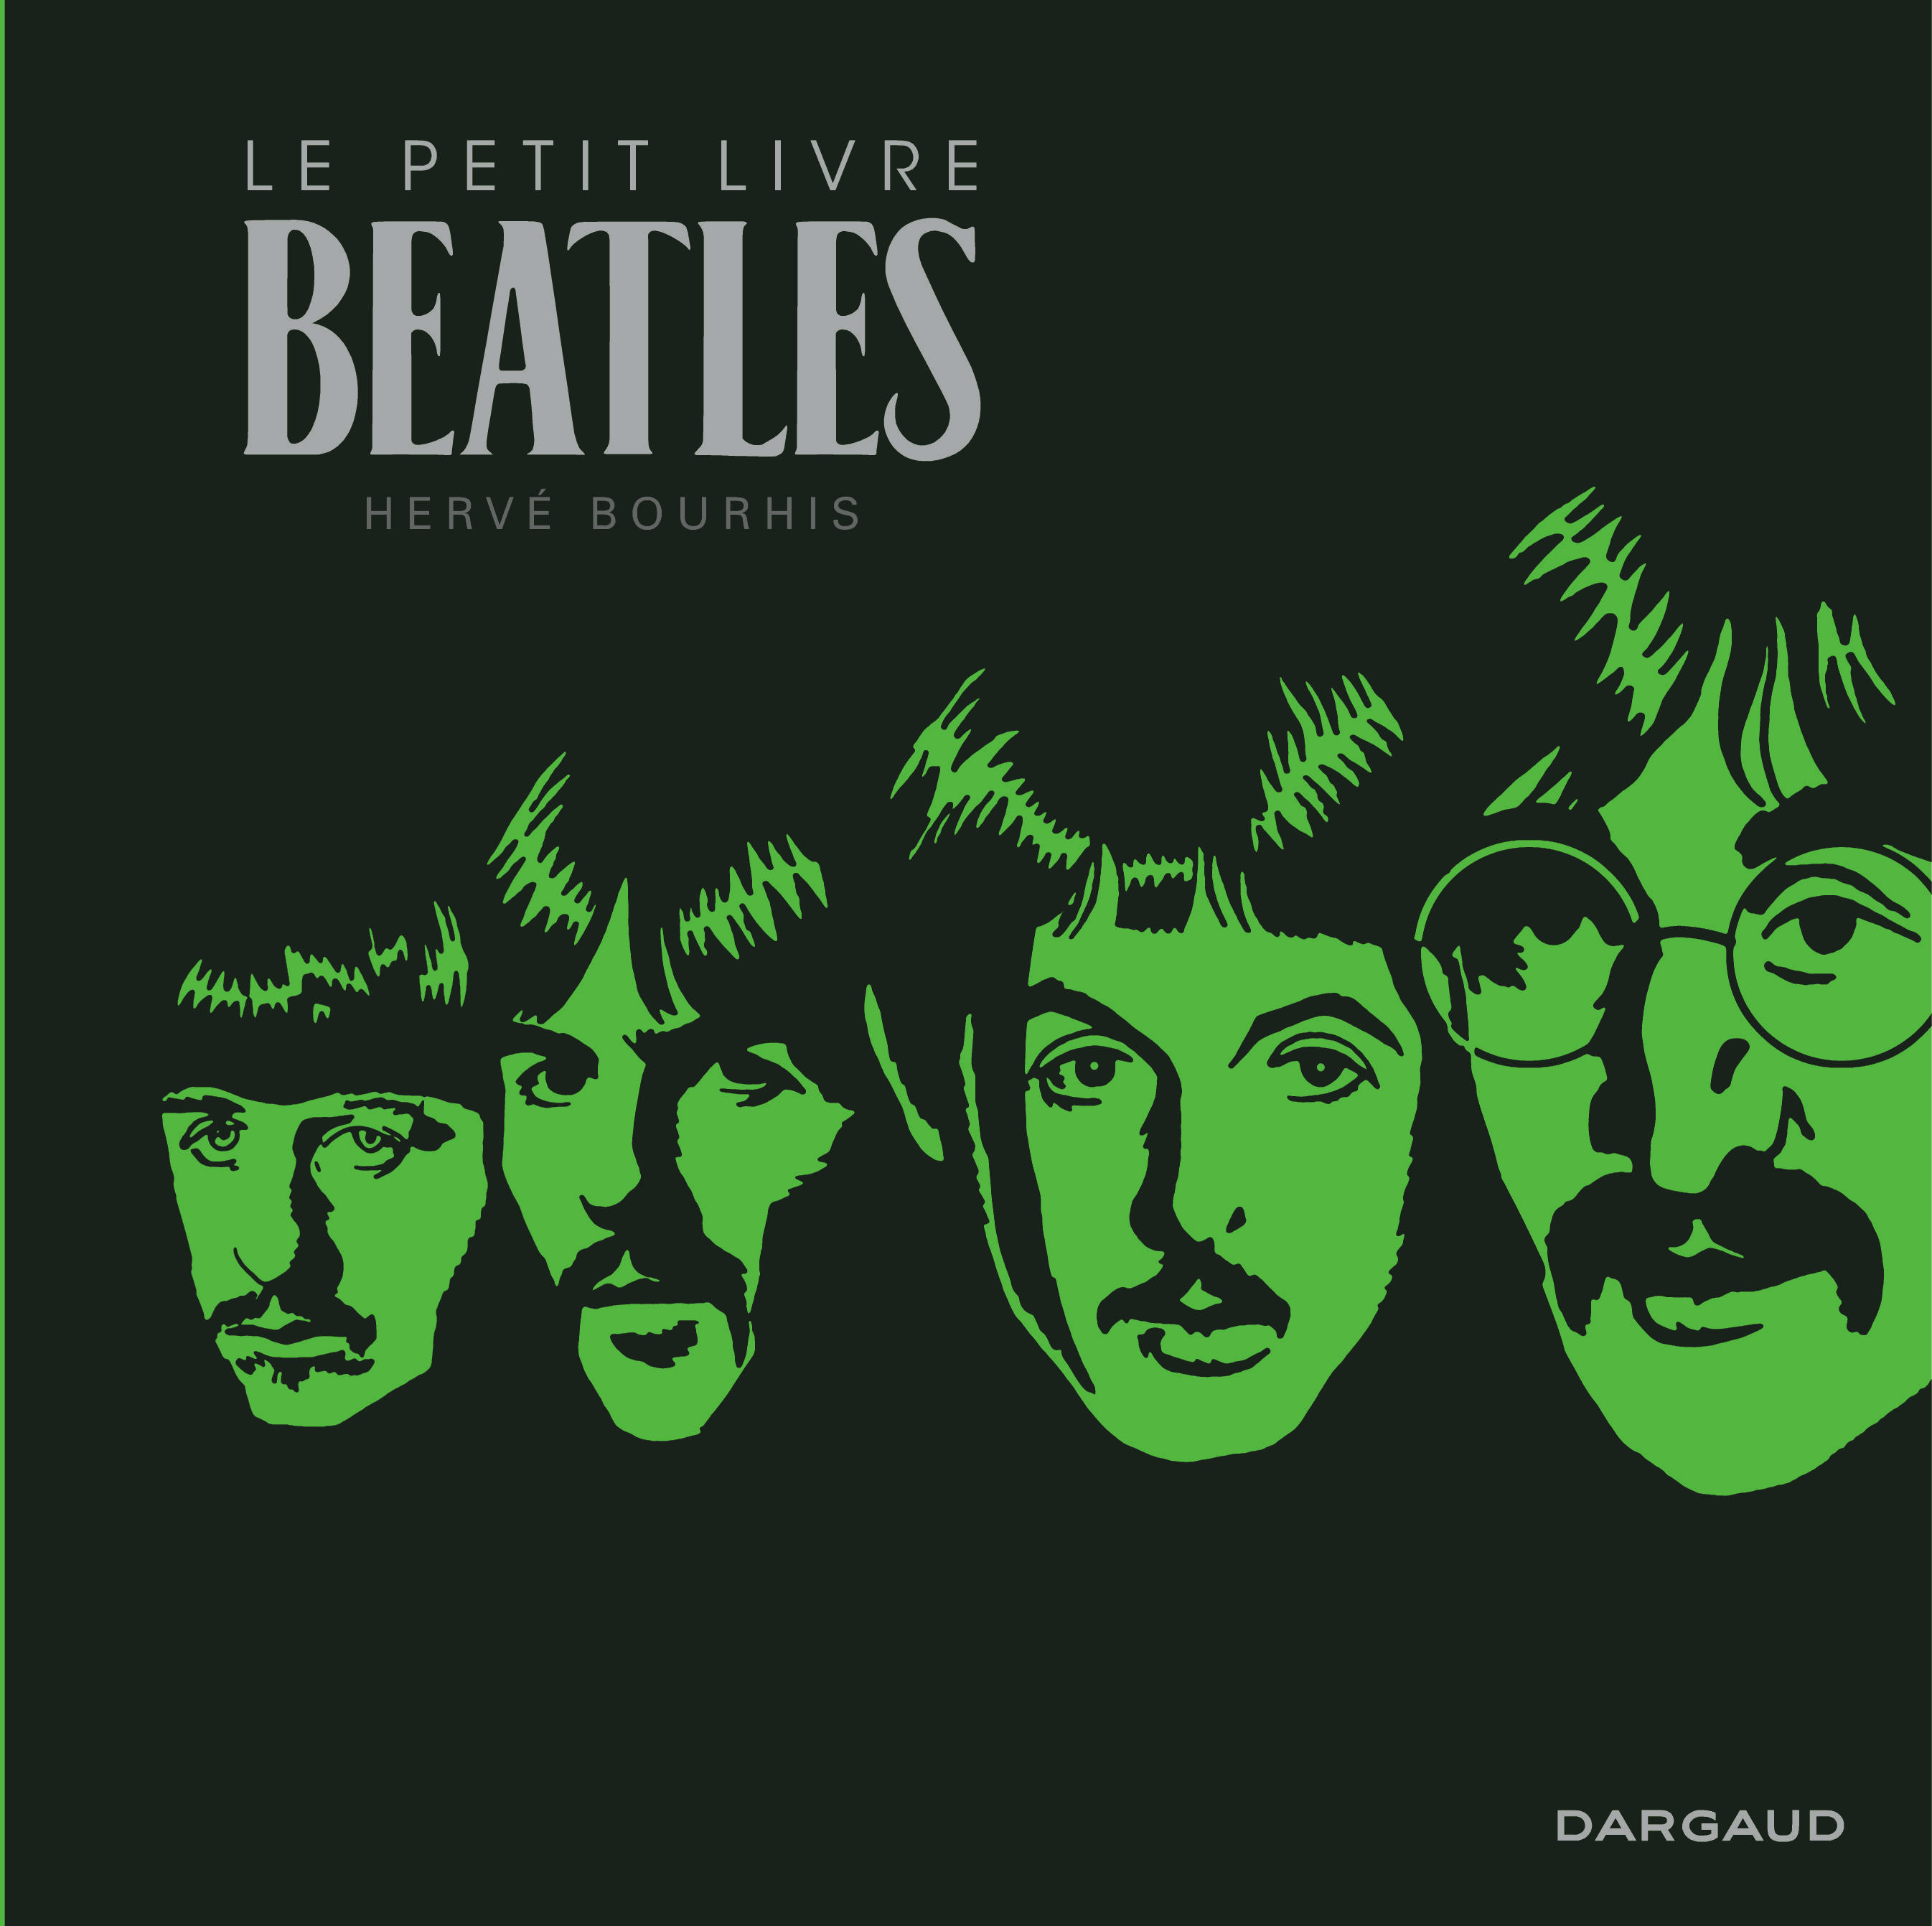 Le Petit Livre Beatles – Le Petit Livre Beatles - couv